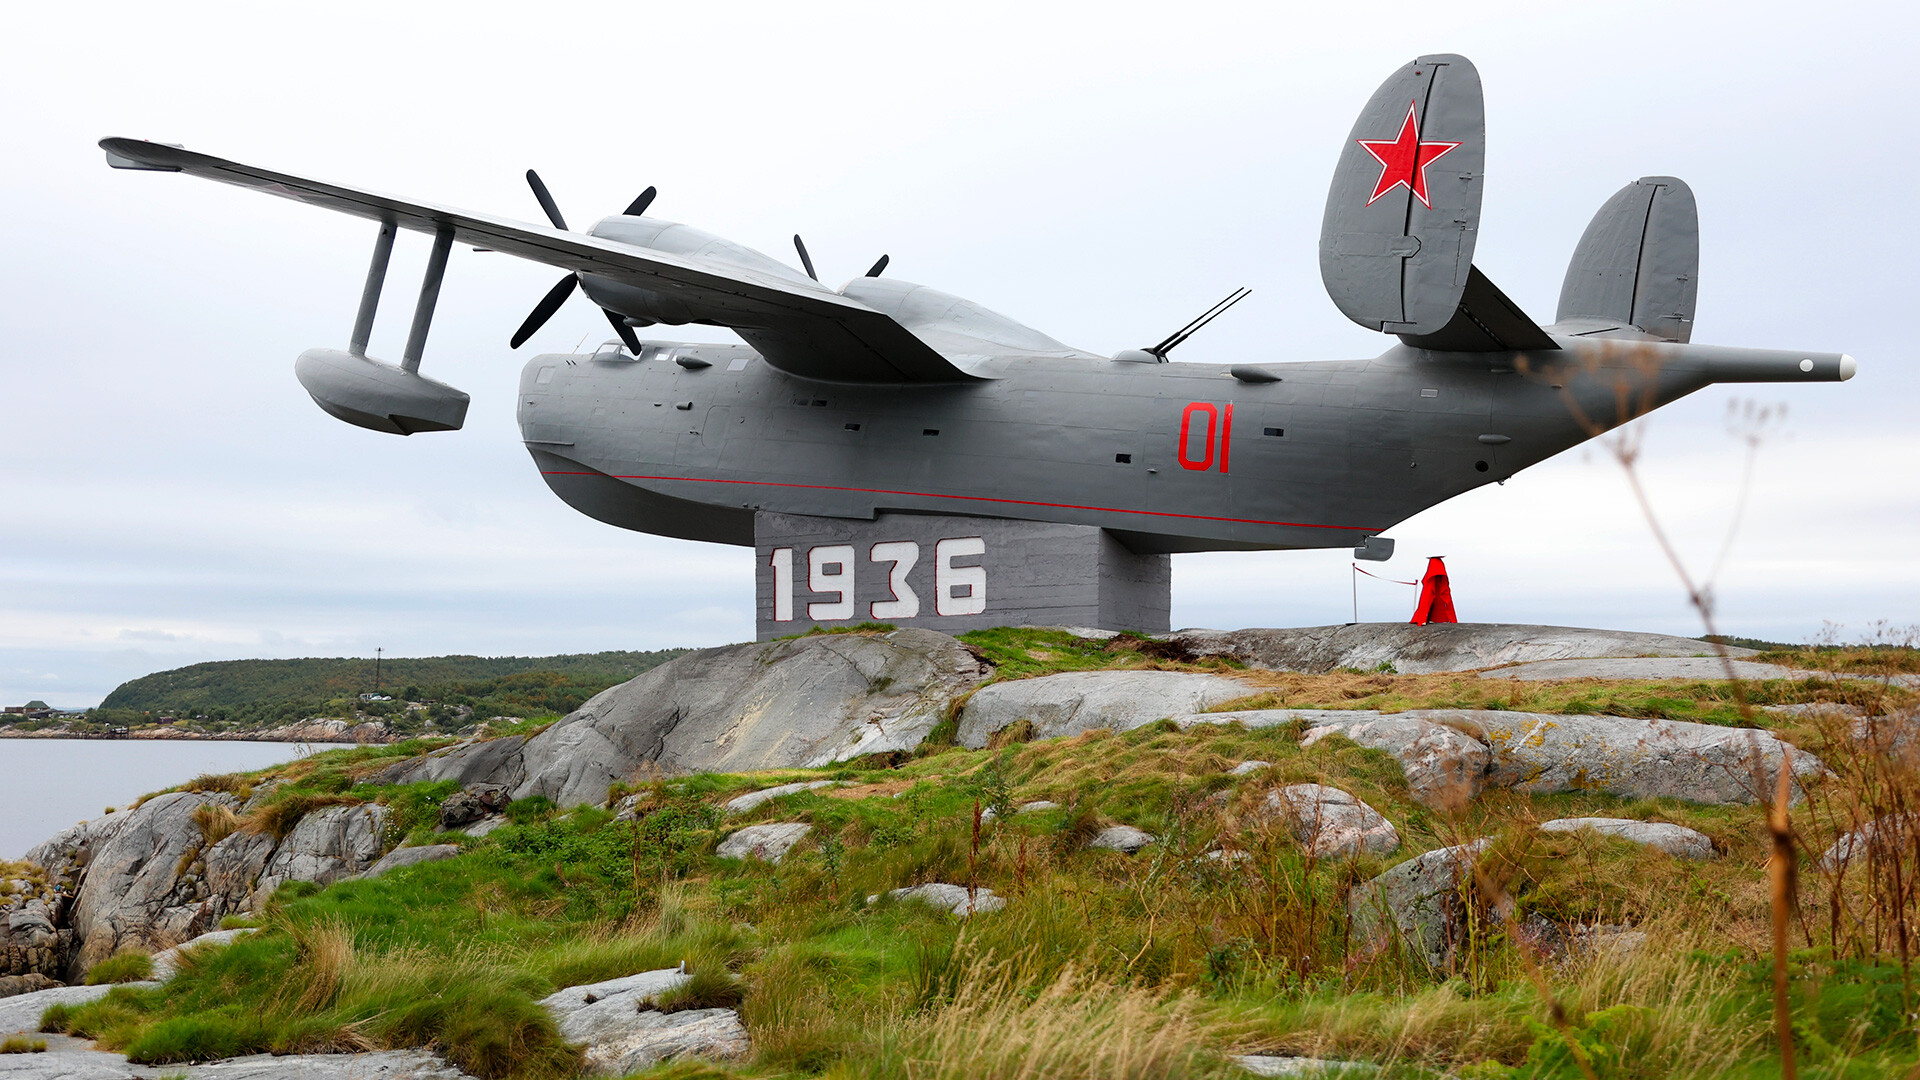 Spomenik prvim letalcem Severne flote - hidroplan BE-6 ASW, odprt po obnovi na otoku Bolšoj Grjaznij v Kolskem zalivu v Murmanski regiji; "1936" na podstavku pomeni leto ustanovitve letalskih sil Severne flote

